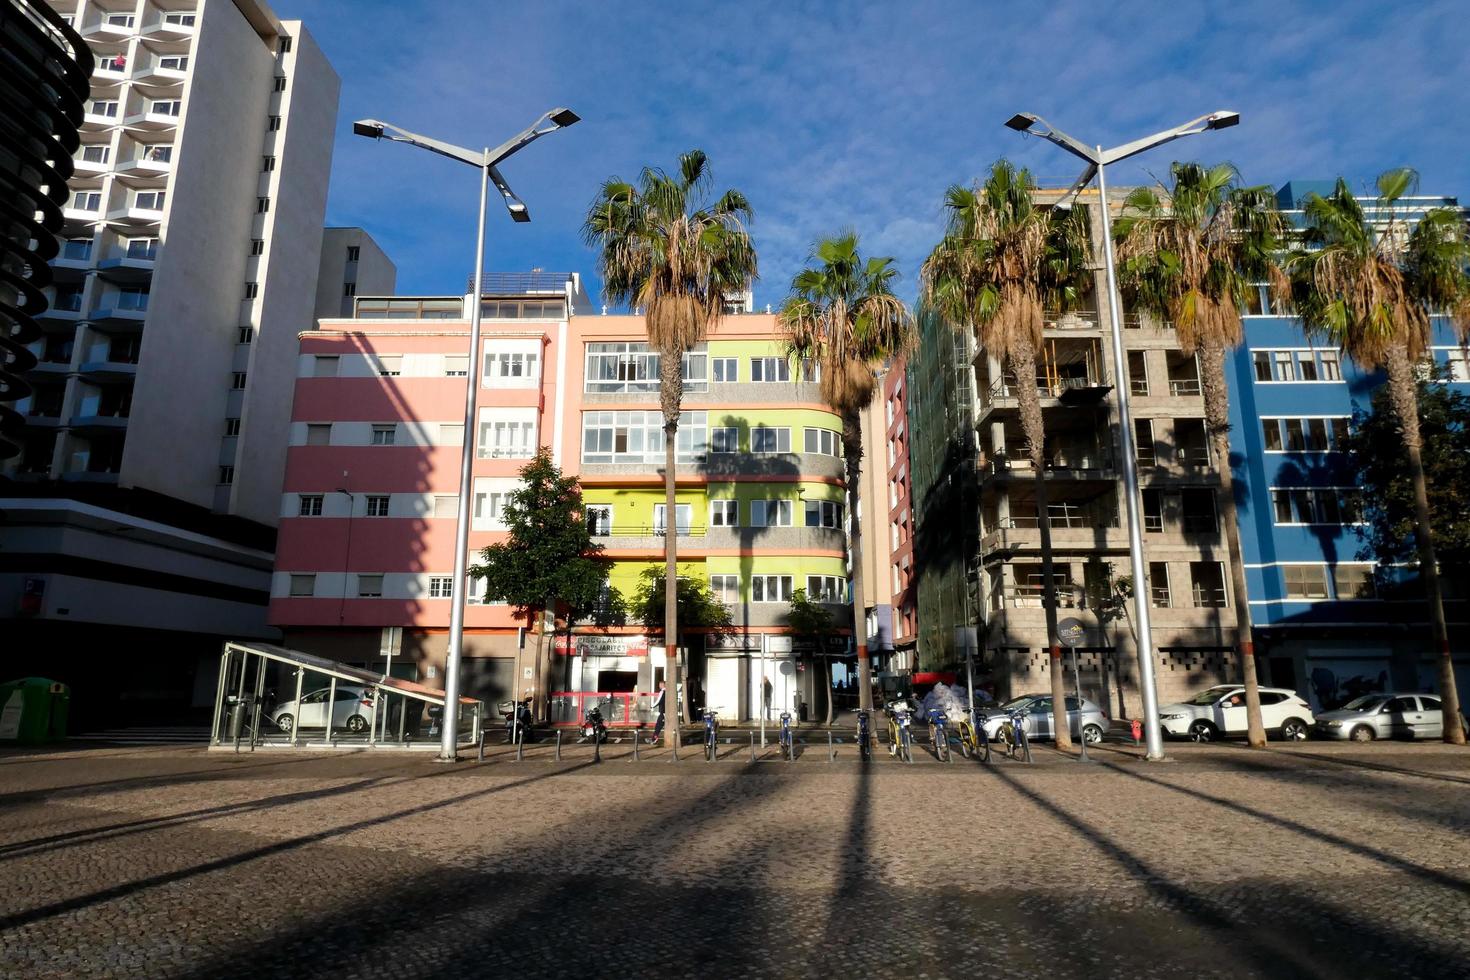 city centre of Las Palmas de Gran Canaria, Spain photo